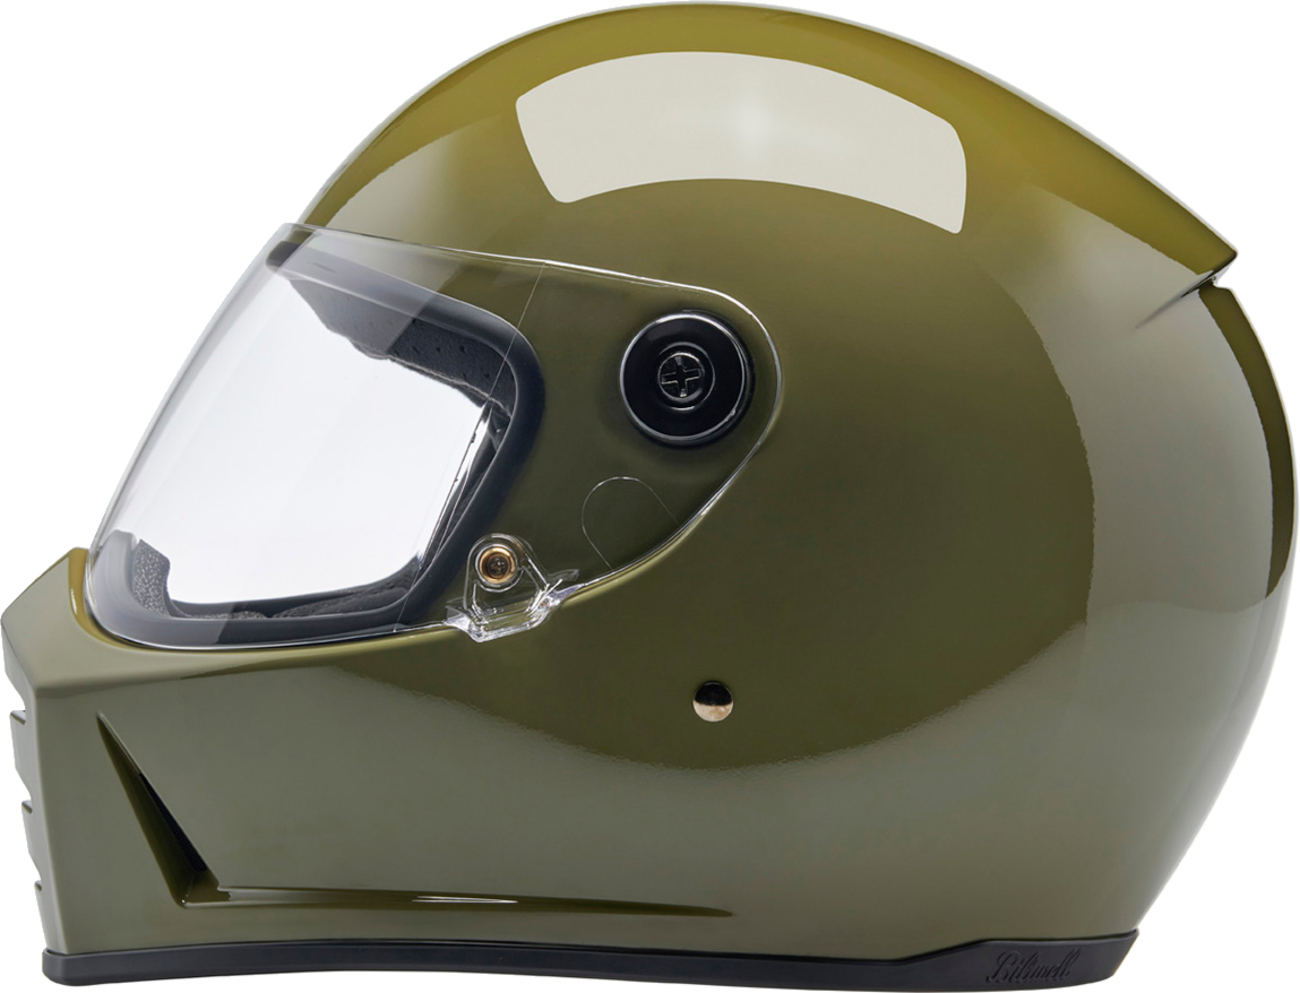 BILTWELL Lane Splitter Helmet - Gloss Olive Green - Medium 1004-154-503